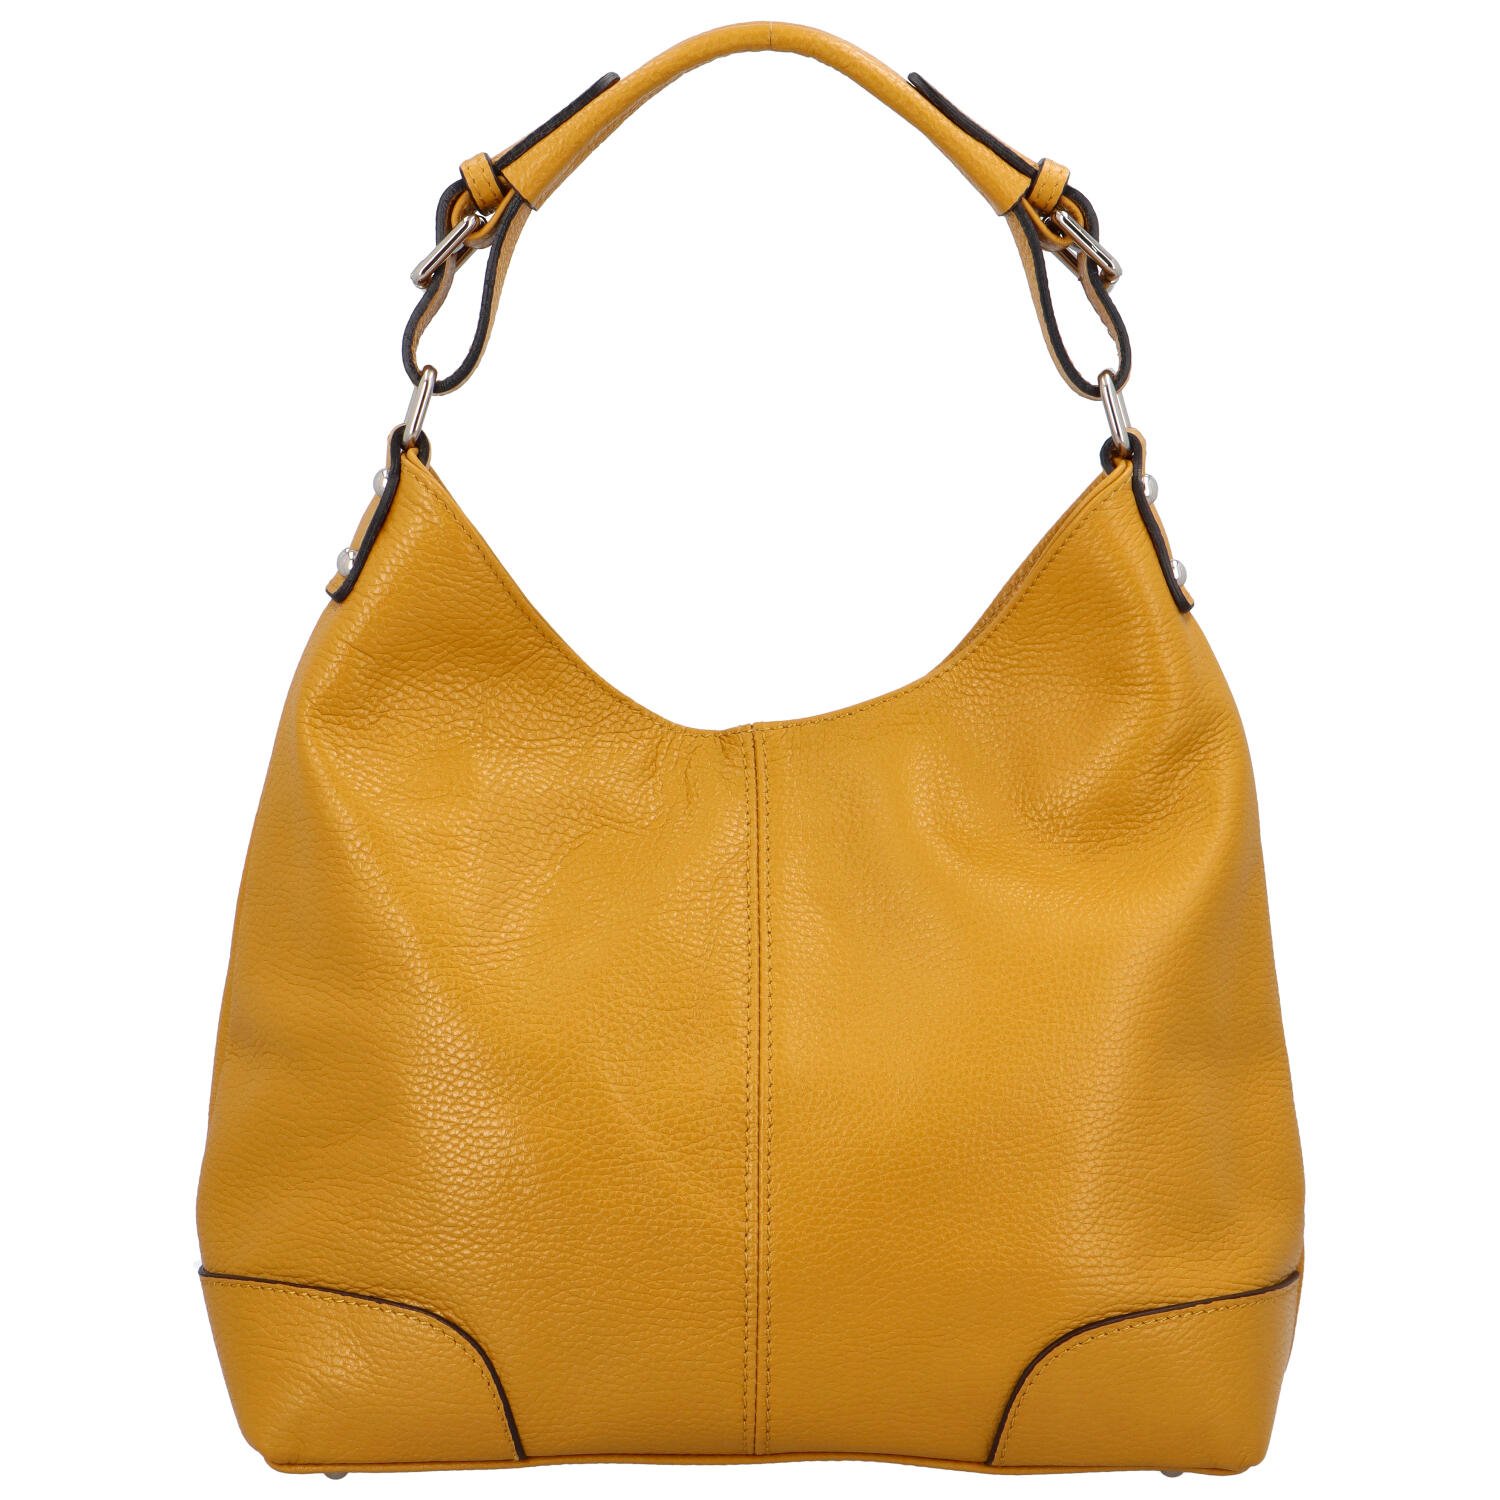 Dámská kožená kabelka tmavě žlutá - ItalY Inpelle Two